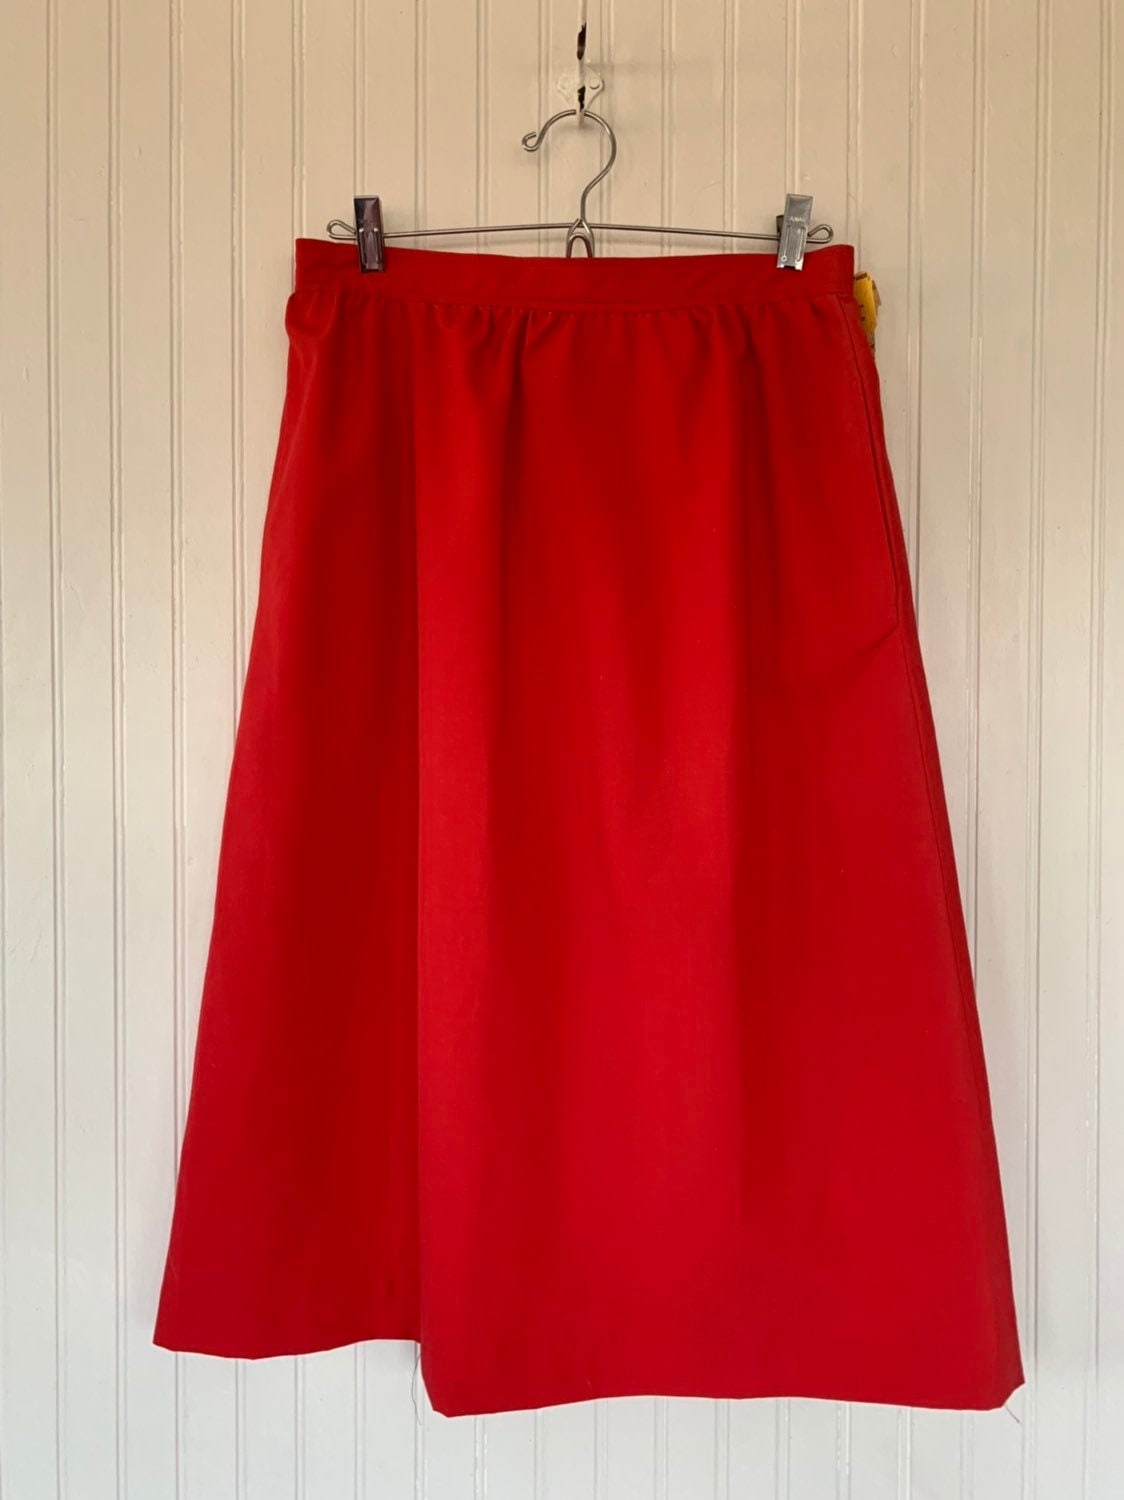 Vintage 80s Deadstock Red Skirt Medium Med M 28 Waist Pockets Below ...